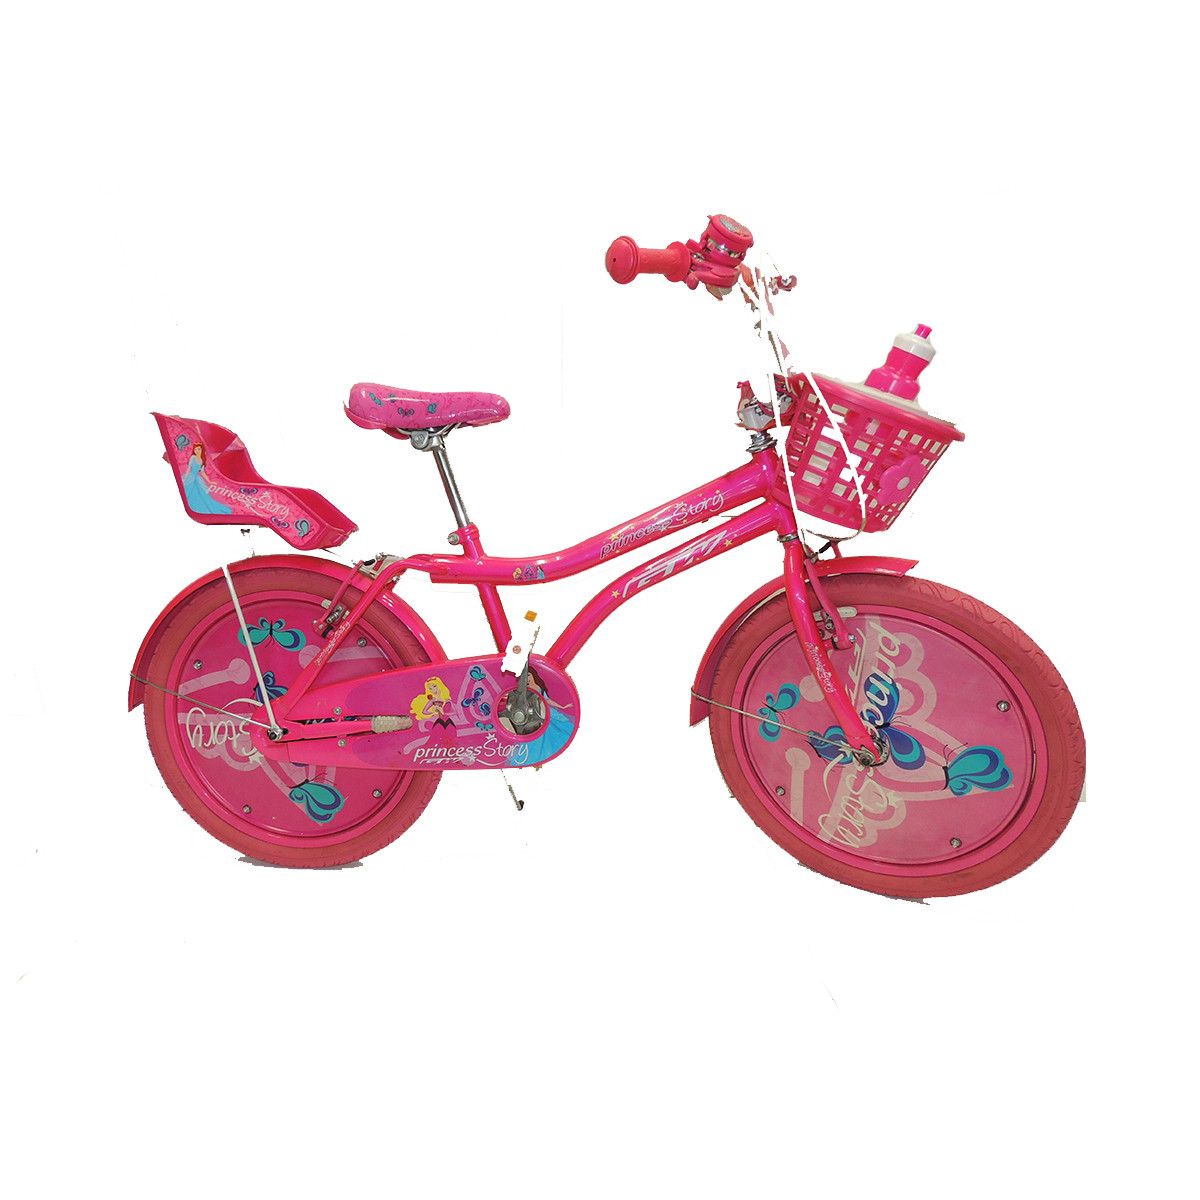 Imagen Bicicleta GW Princess rin 12 niñas 2 a 5 años